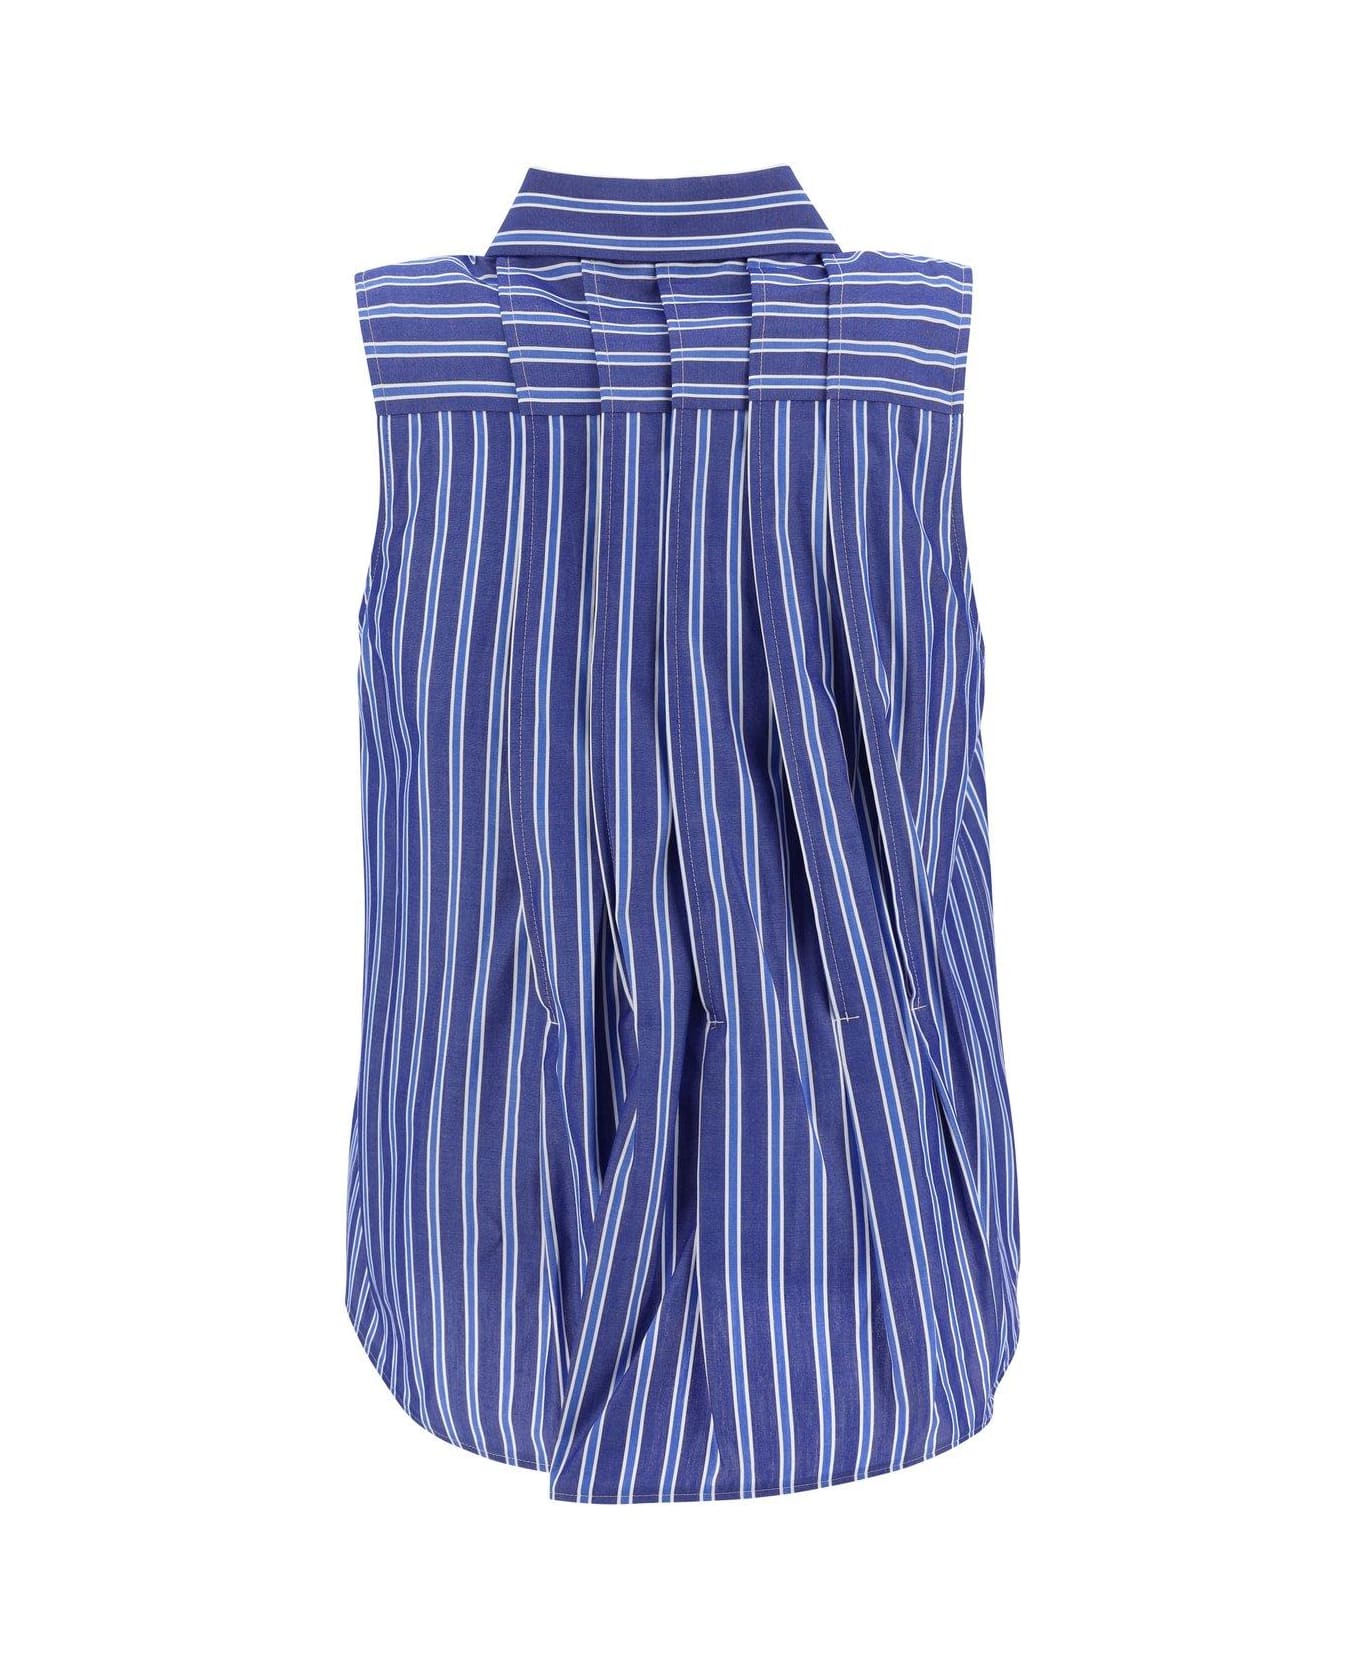 Sacai Striped Flared Hem Sleeveless Shirt - Blue